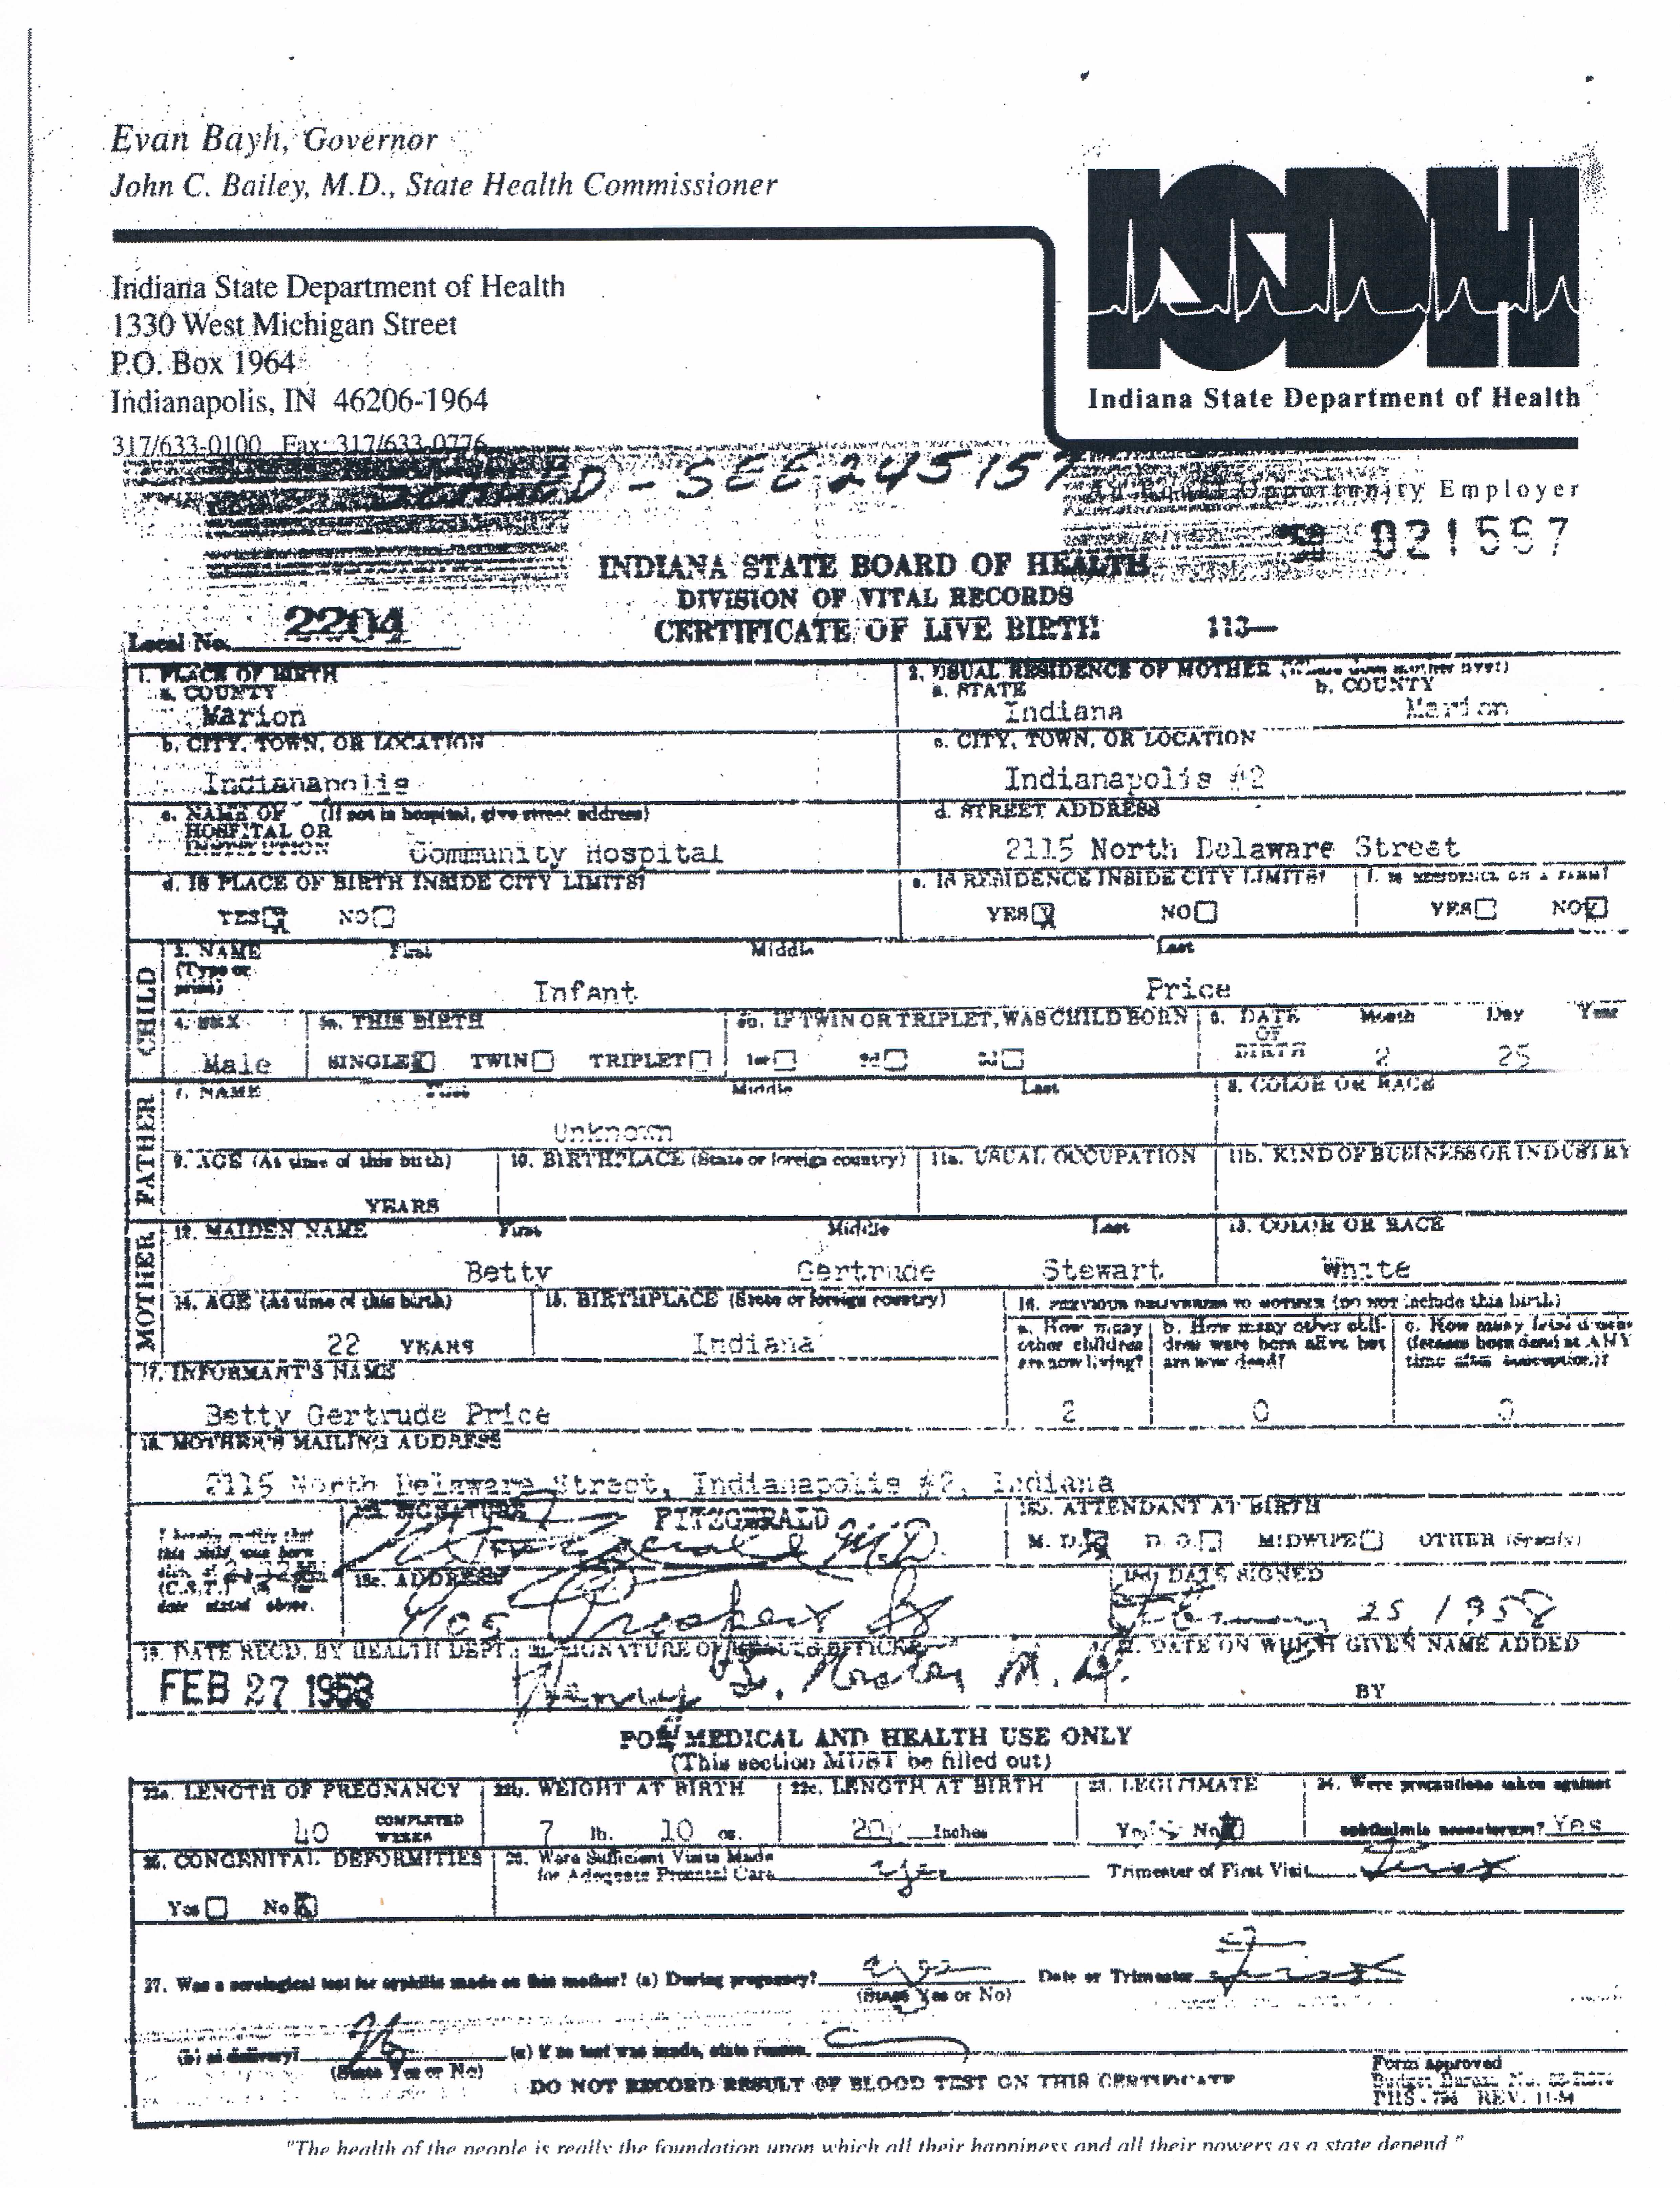 Original Birth Certificate(F).JPG